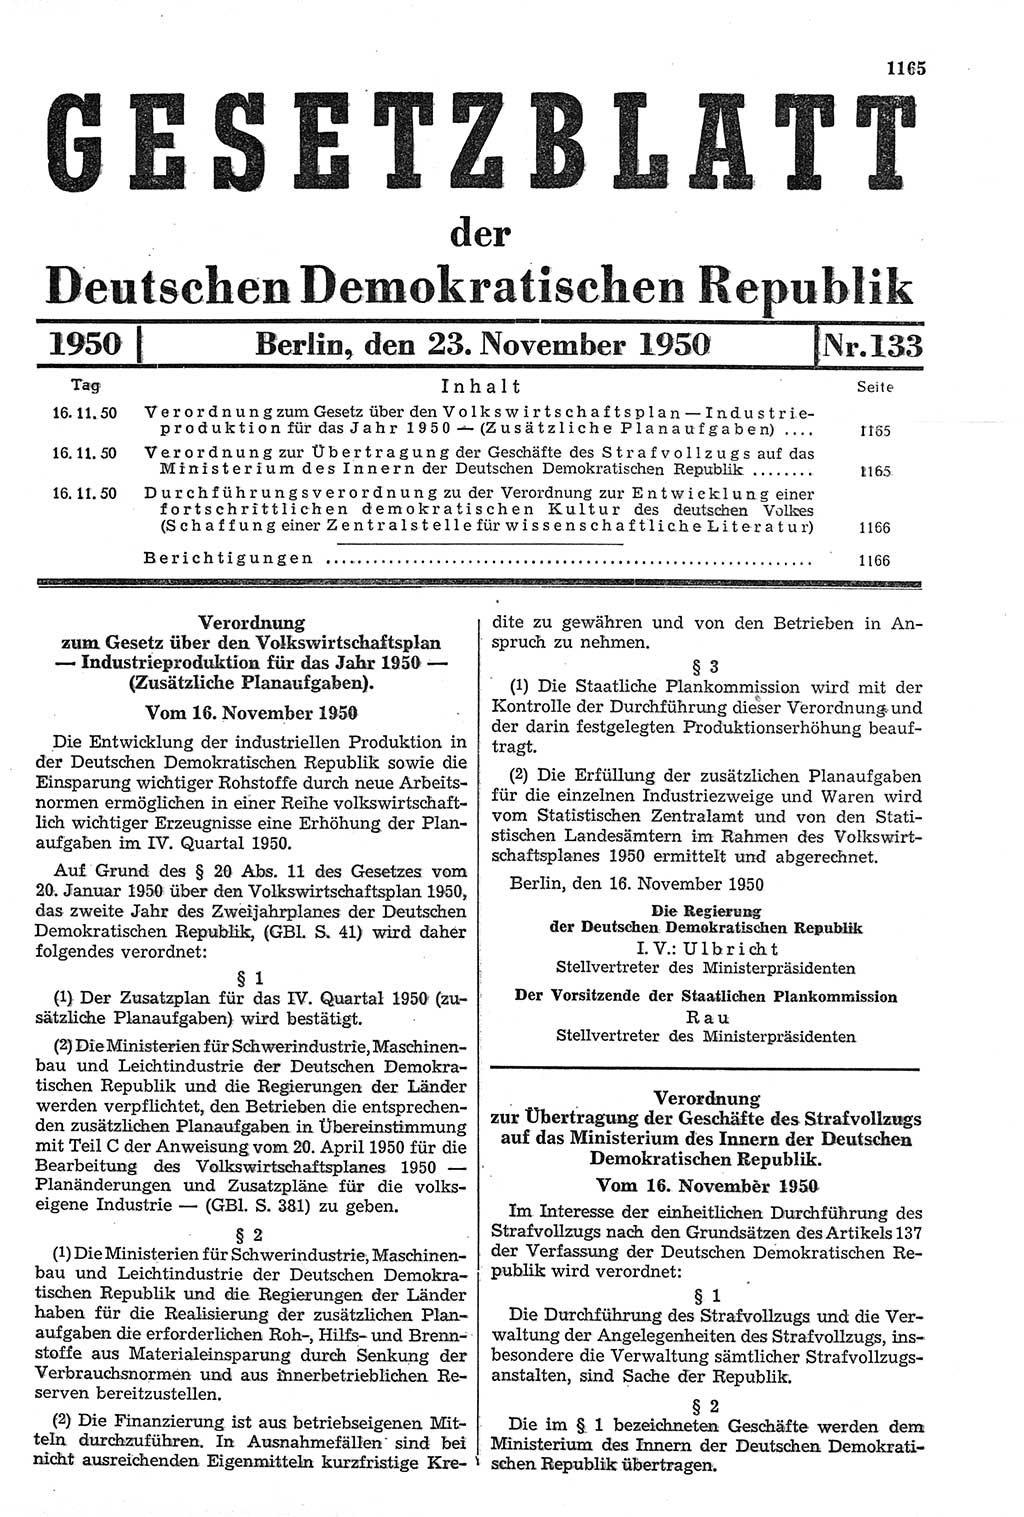 Gesetzblatt (GBl.) der Deutschen Demokratischen Republik (DDR) 1950, Seite 1165 (GBl. DDR 1950, S. 1165)